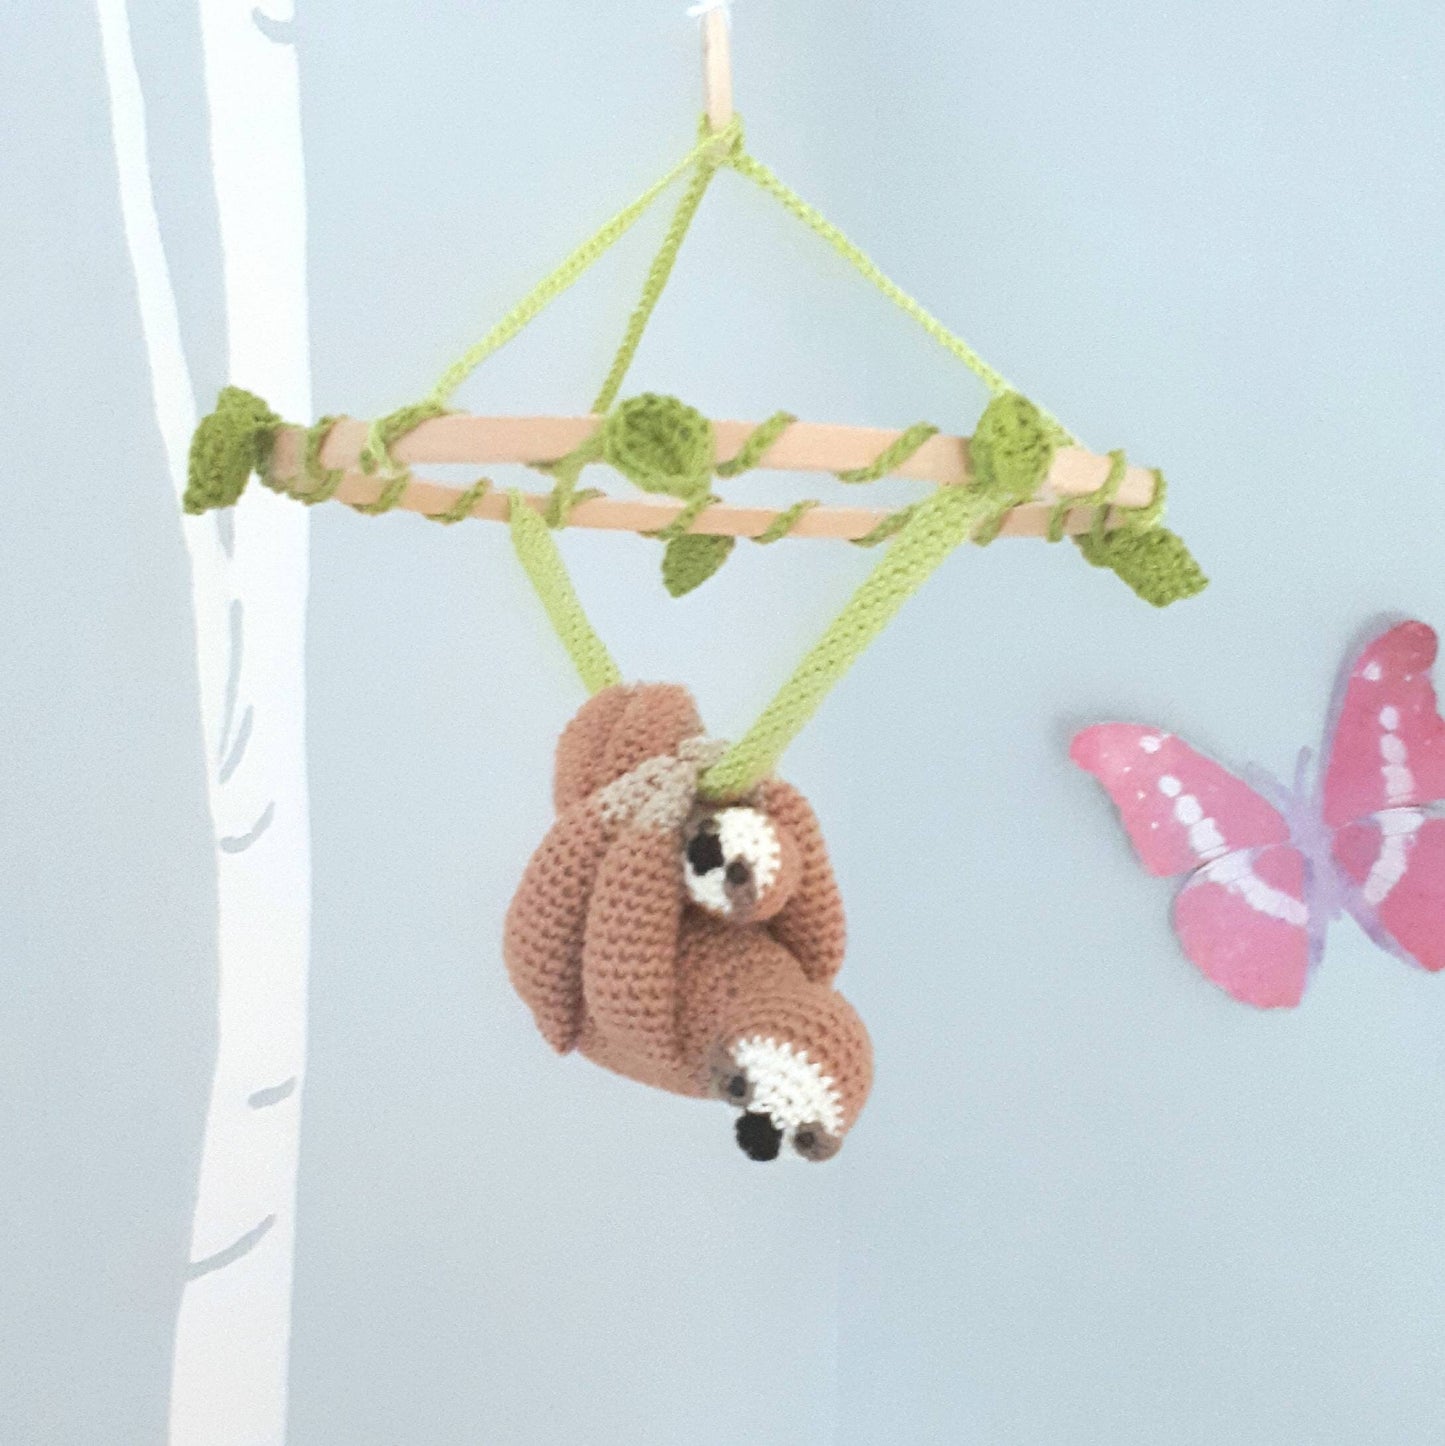 Stuffed sloth baby nursery mobile